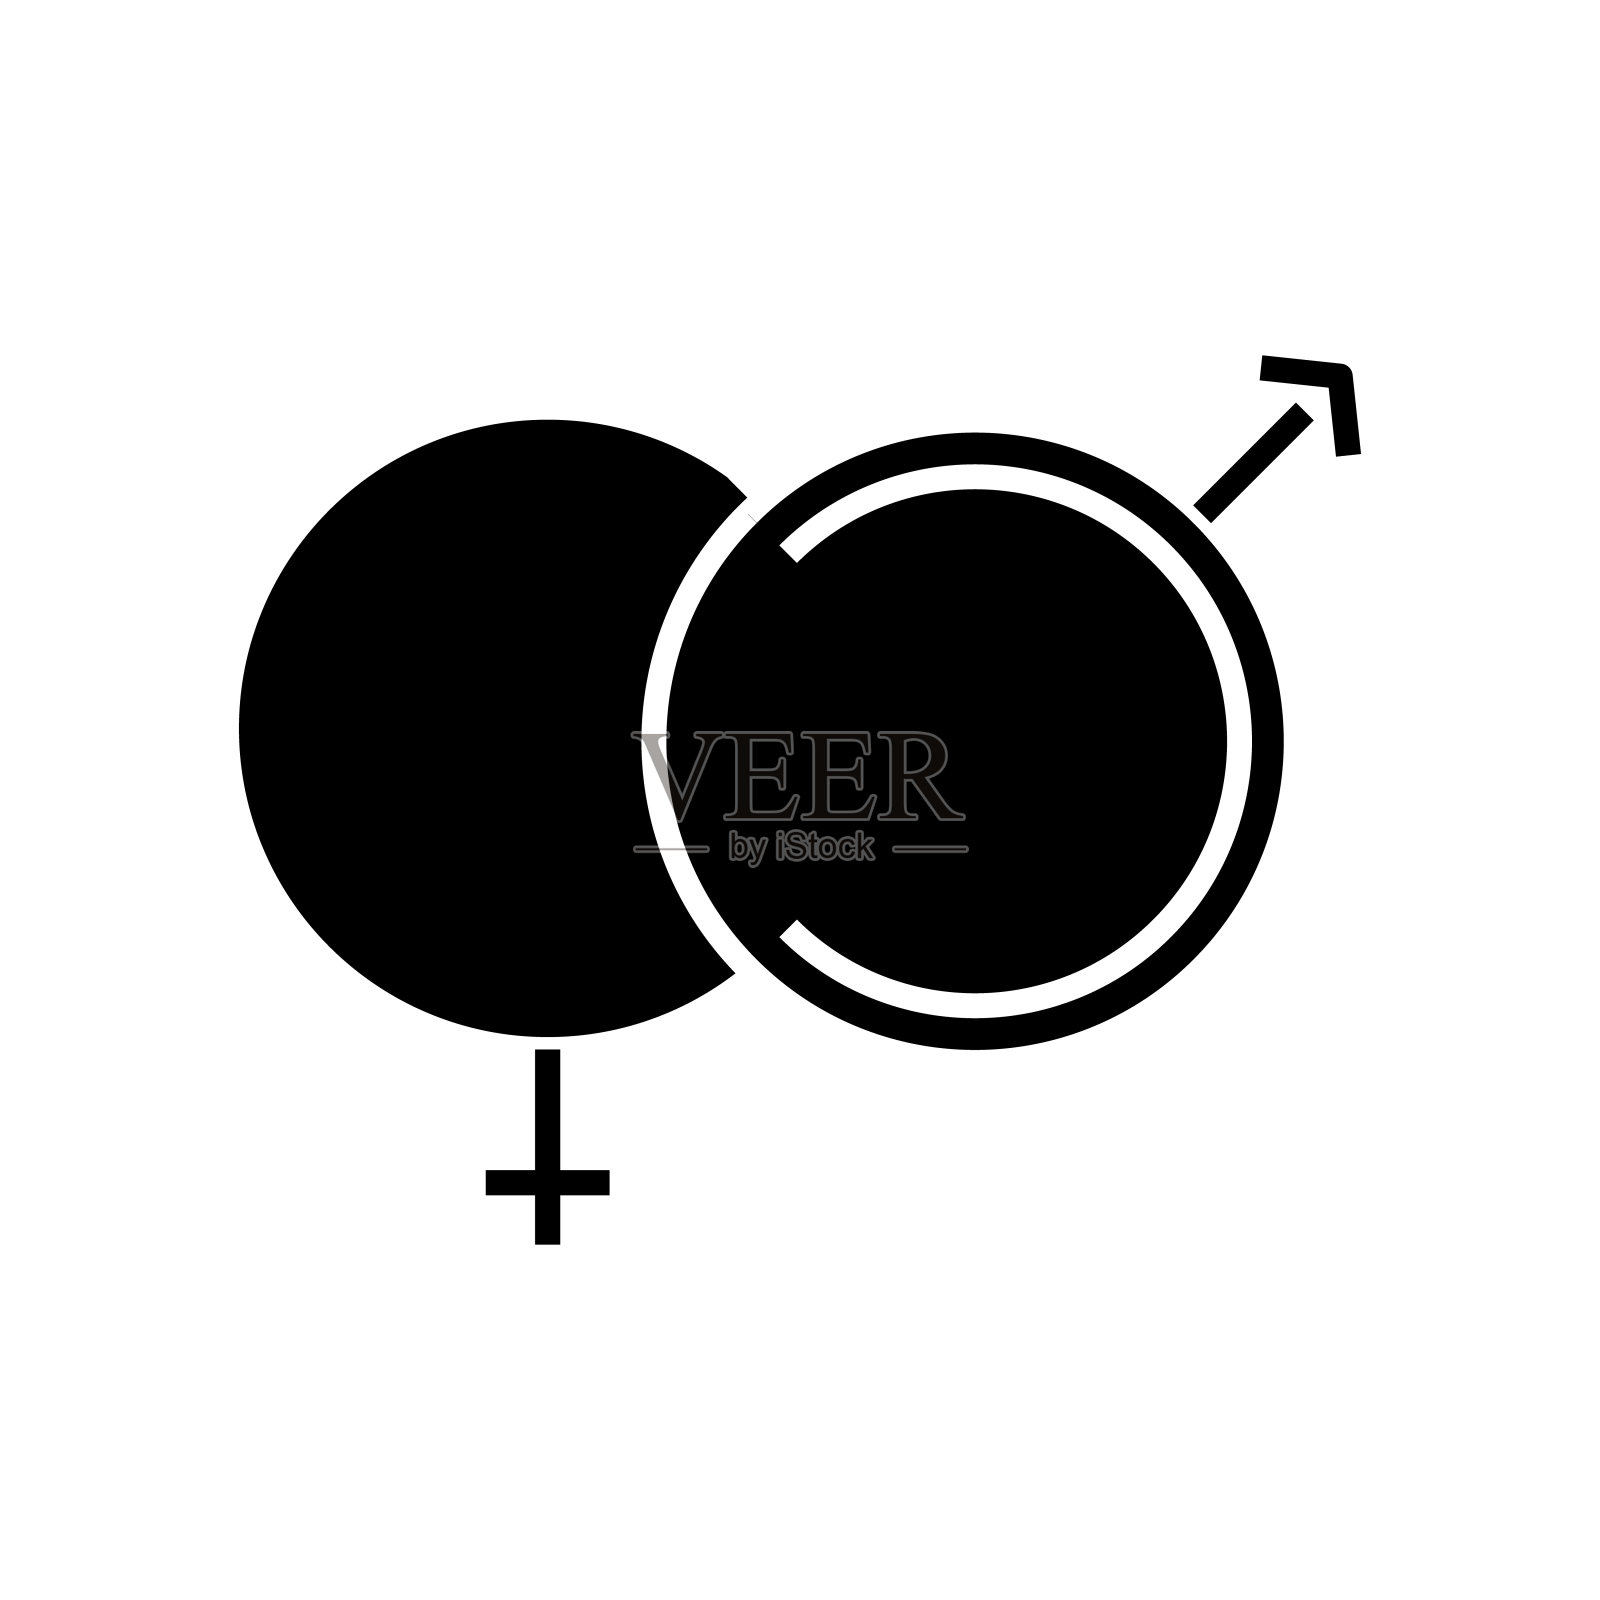 性健康黑色图标、概念说明、矢量平面符号、象形符号图标素材